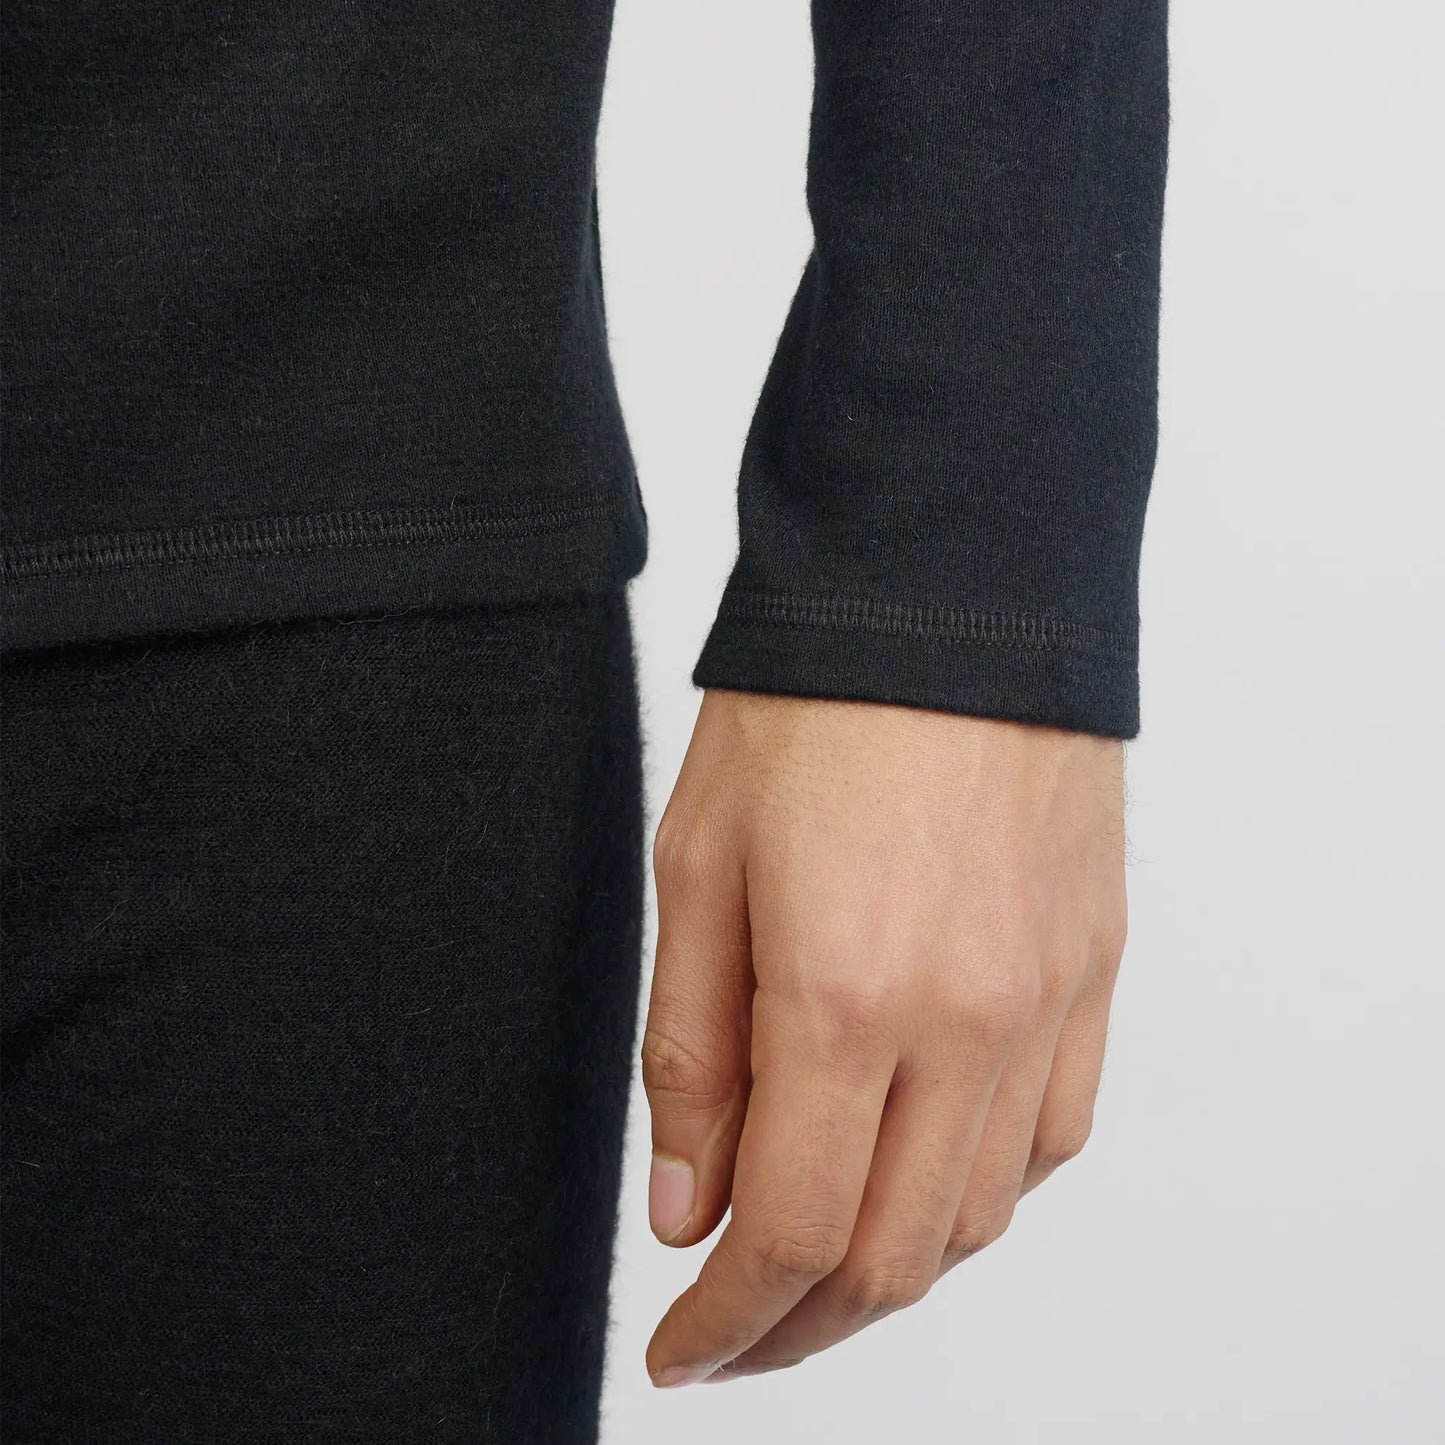 mens alpaca sweater warmest lightweight color black